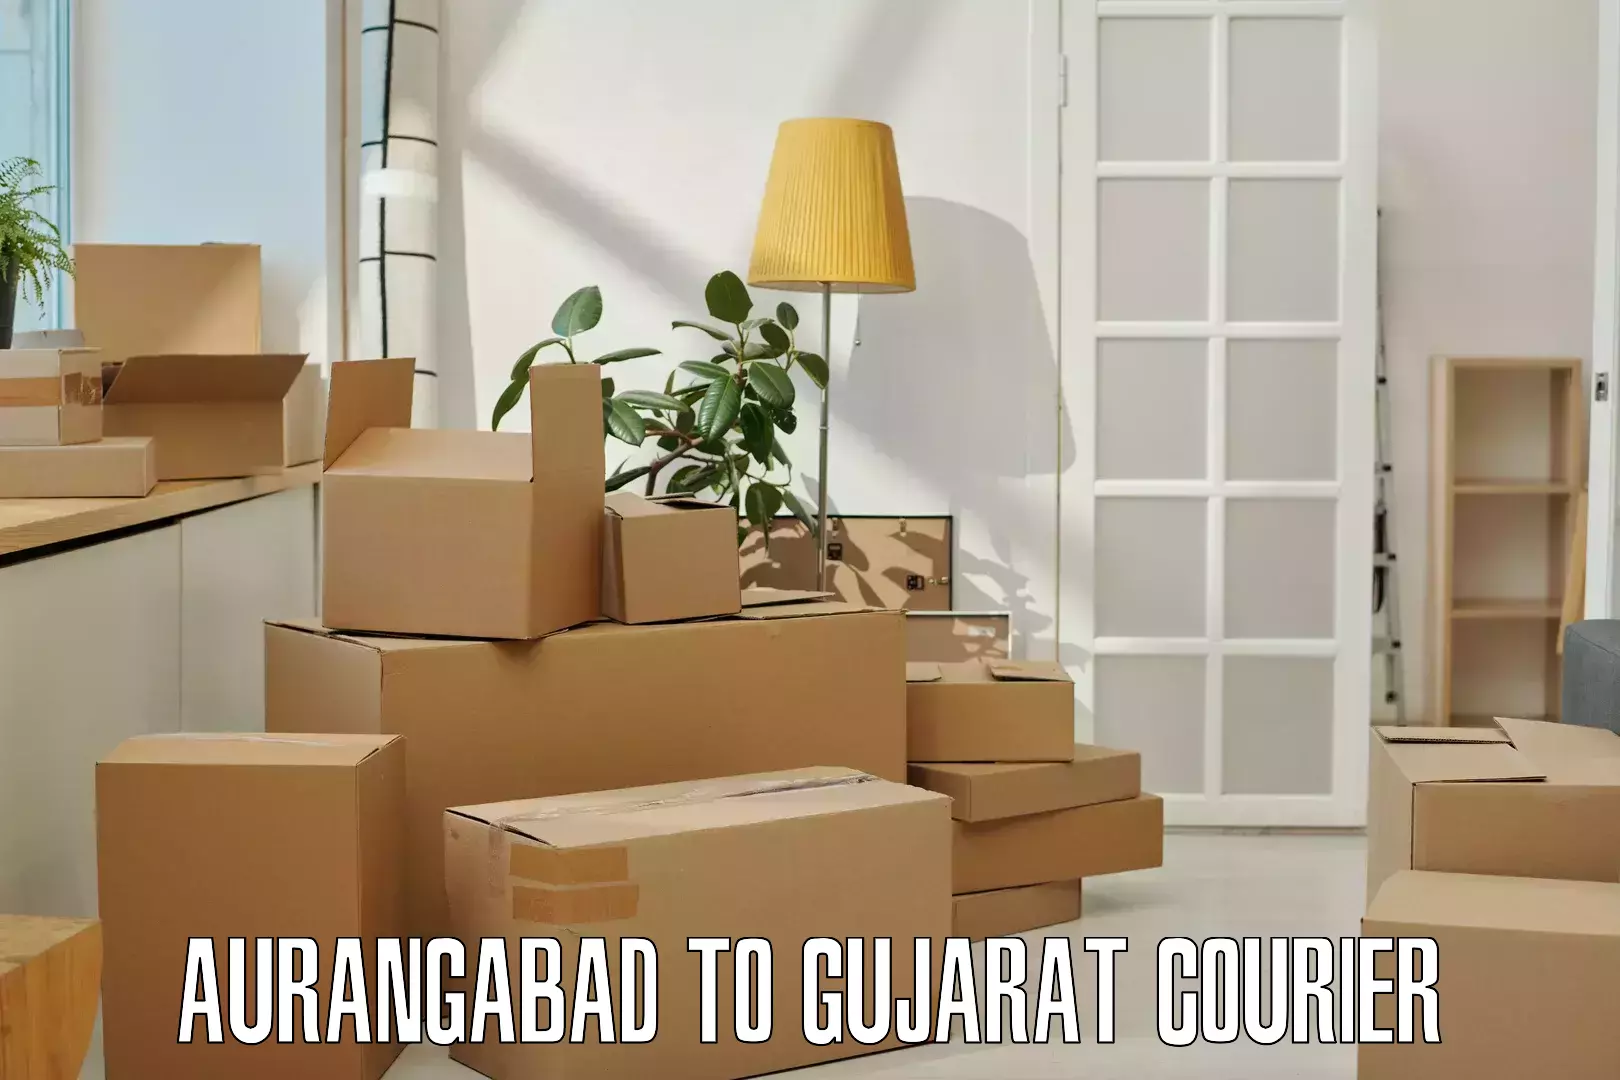 Courier service comparison in Aurangabad to Vapi